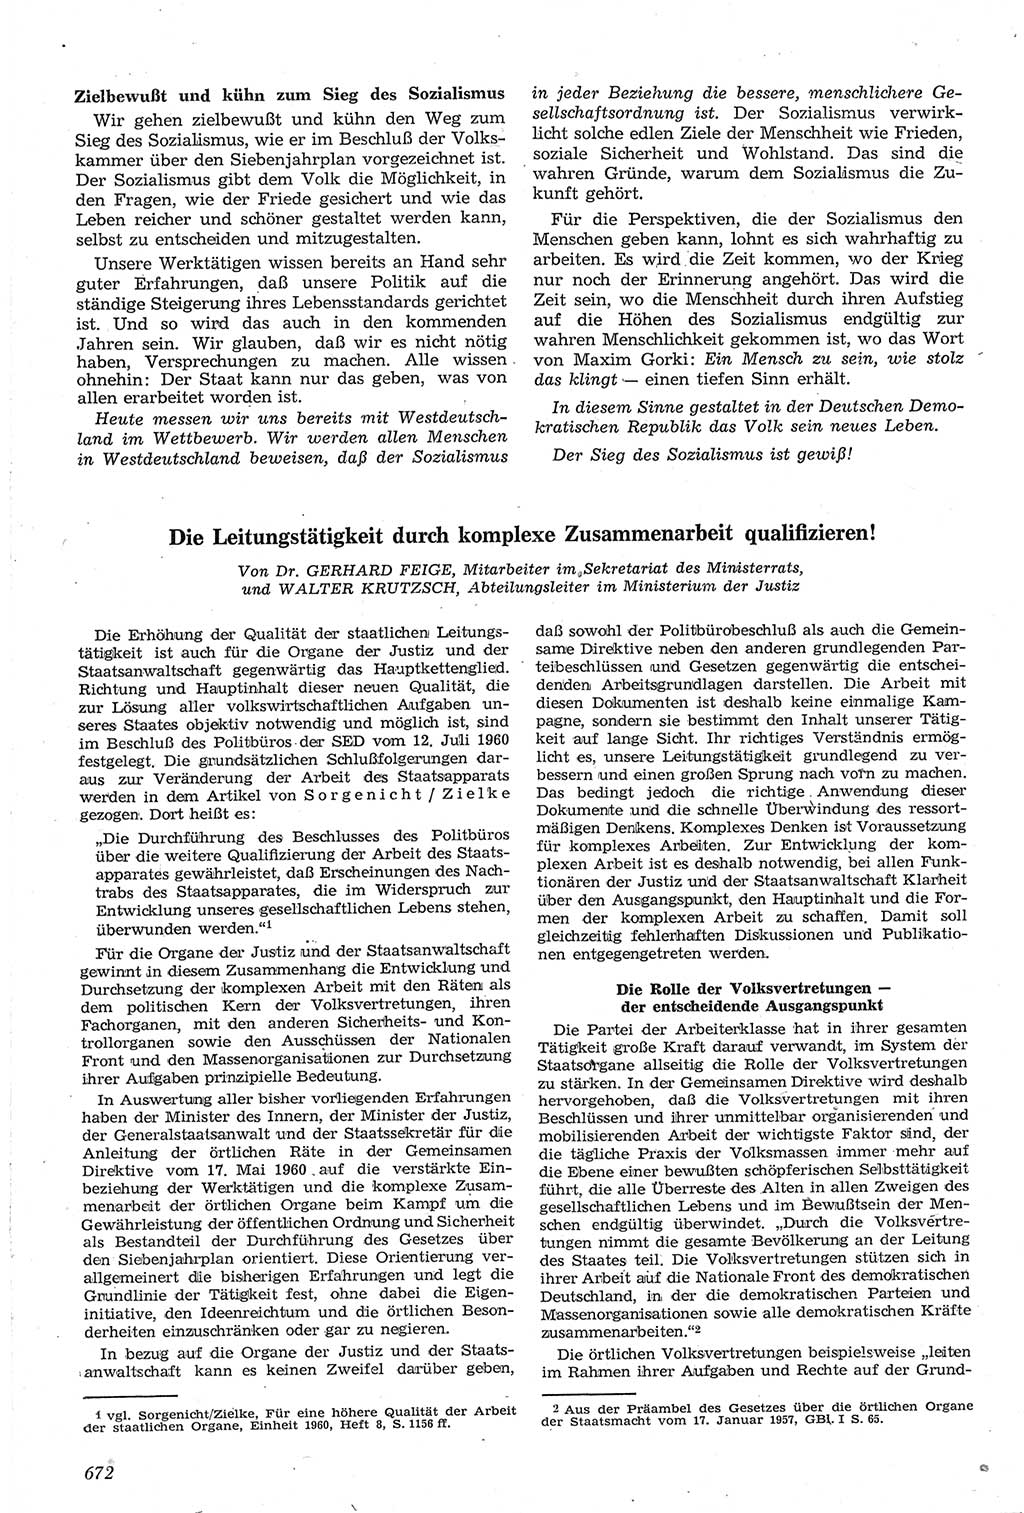 Neue Justiz (NJ), Zeitschrift für Recht und Rechtswissenschaft [Deutsche Demokratische Republik (DDR)], 14. Jahrgang 1960, Seite 672 (NJ DDR 1960, S. 672)